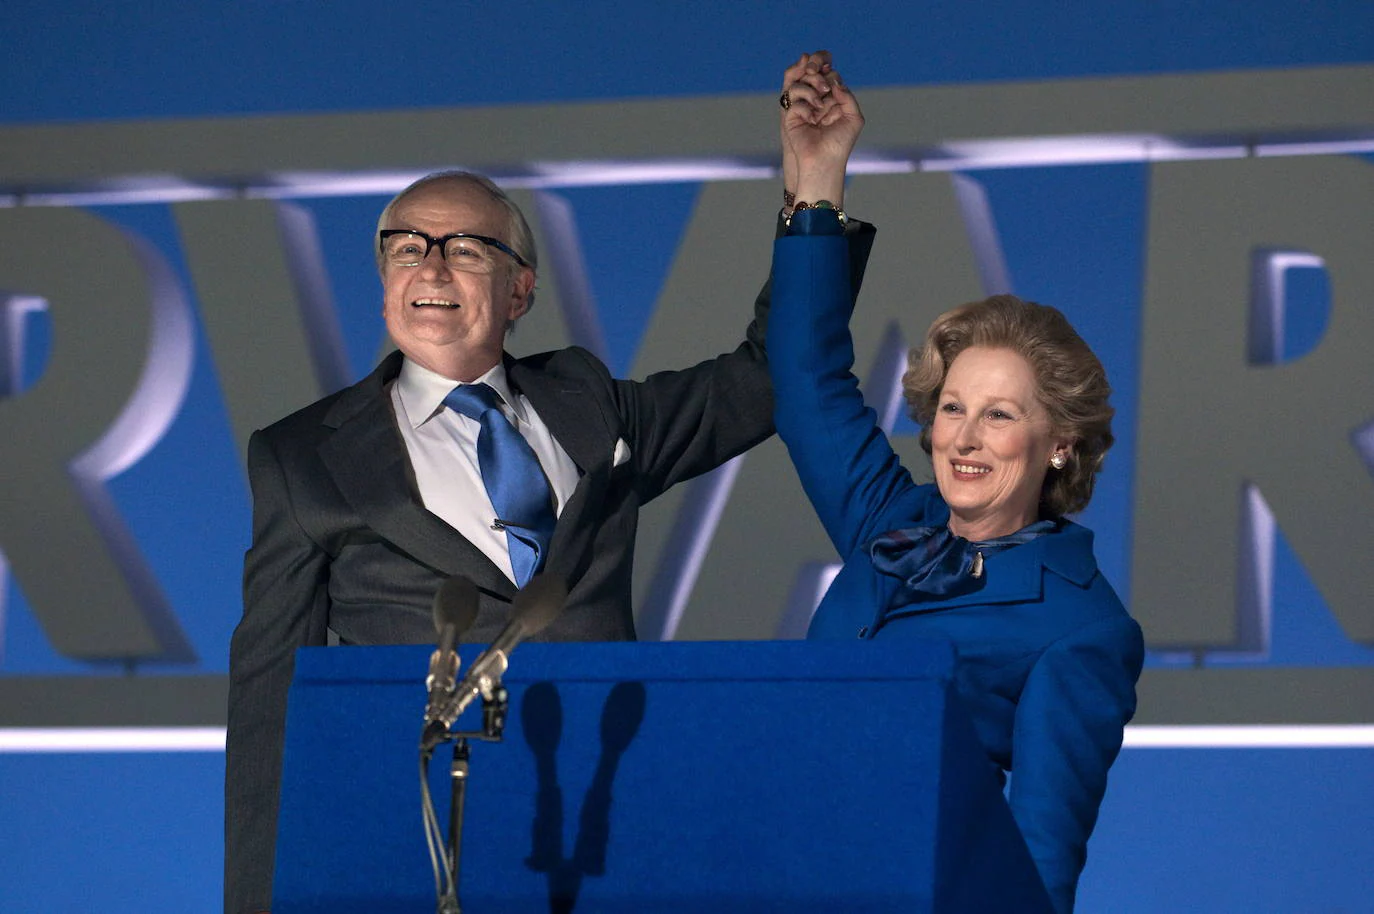 El biopic sobre la primera ministra británica, Margaret Thatcher, supondría la tercera estatuilla para Streep 30 años después.